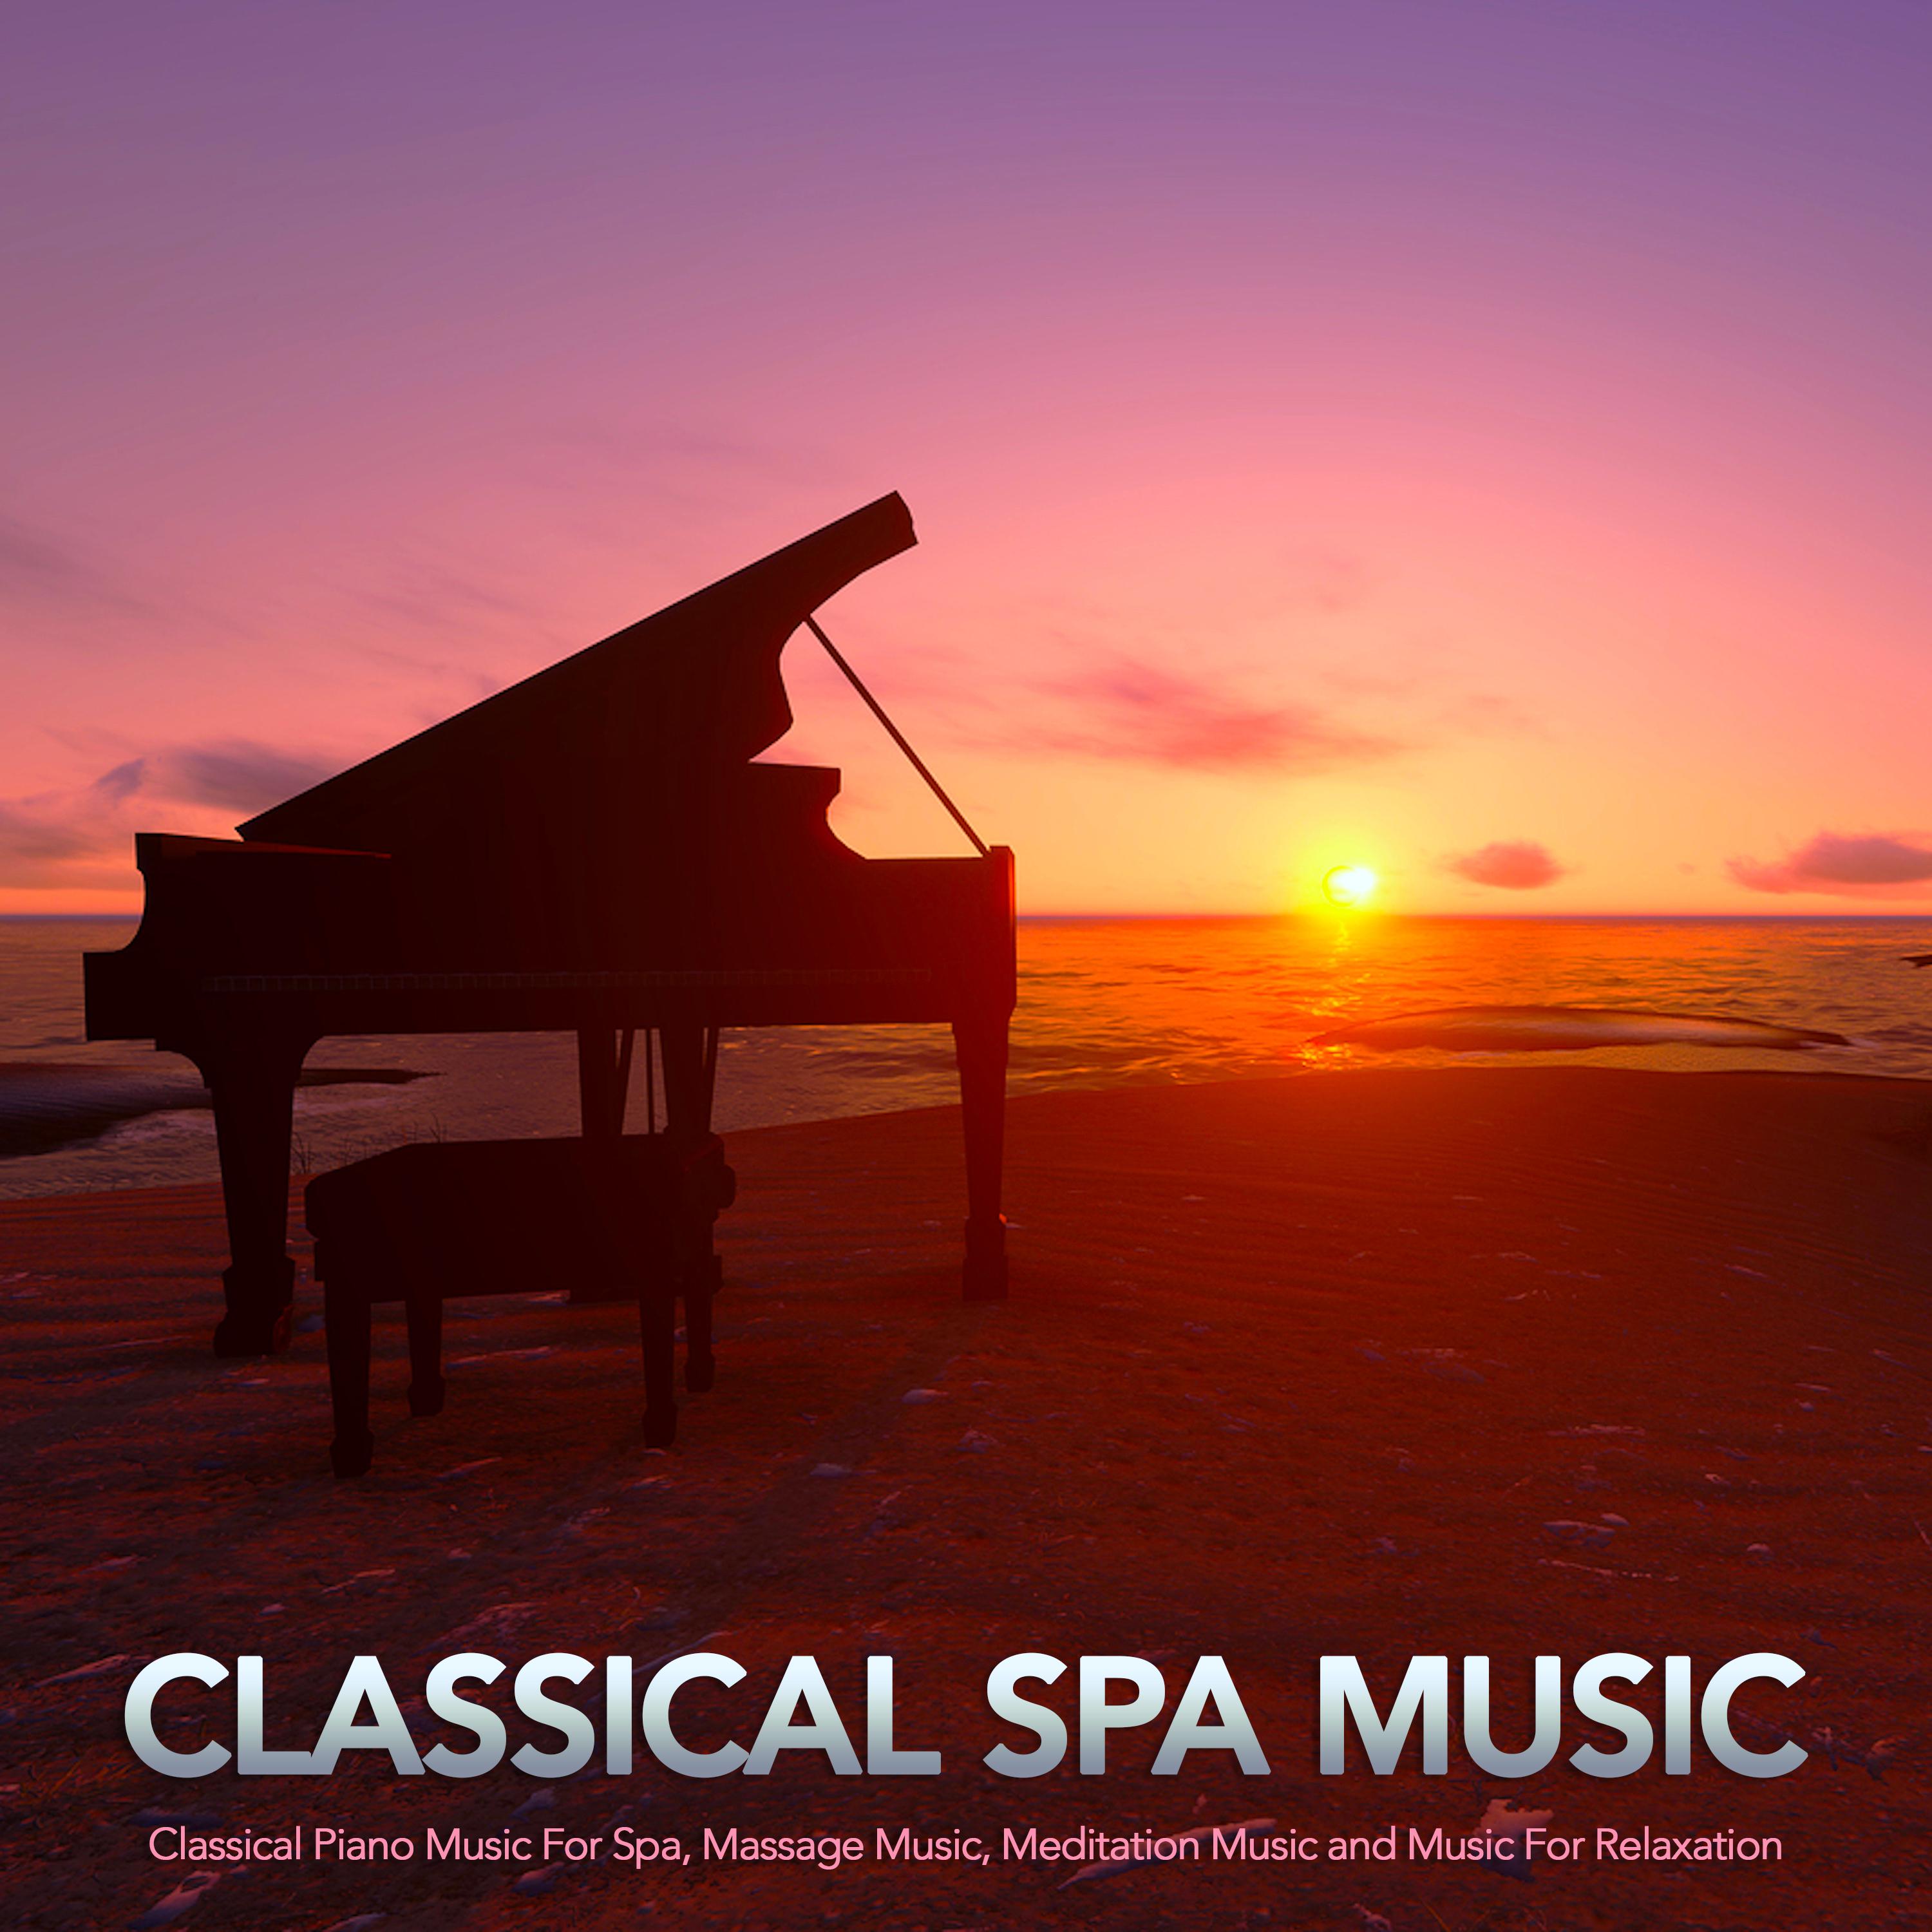 Claire de Lune - Debussy - Classical Piano Music - Spa Music